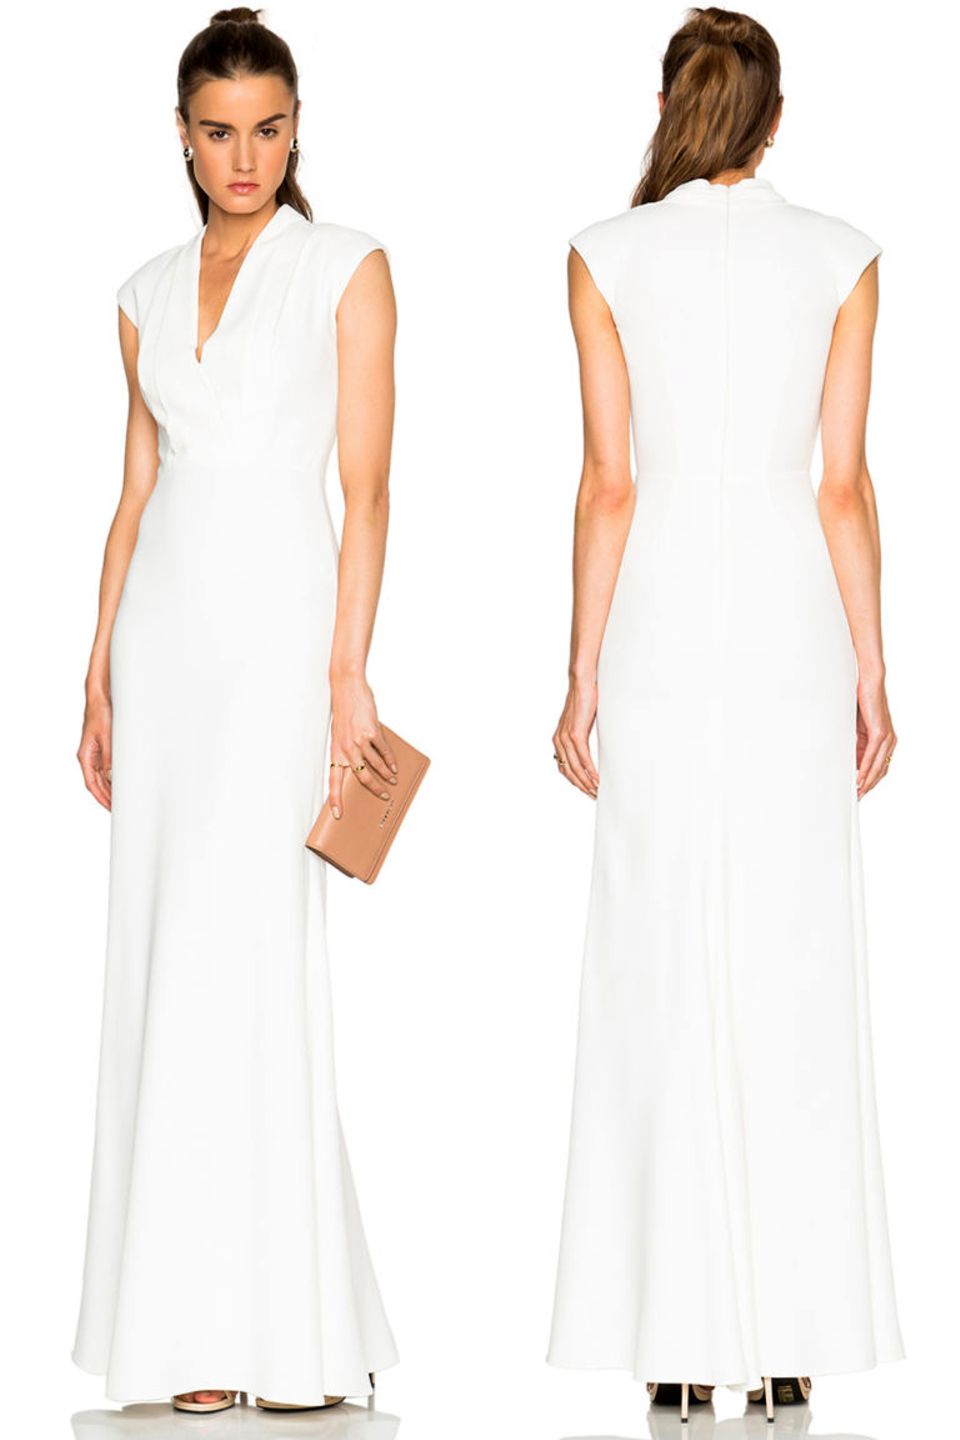 Keine Knopfleiste, ein anderer Ausschnitt, aber eindeutig angelehnt an Pippa Middletons Brautjungfernkleid ist der neue Entwurf von Alexander McQueen.